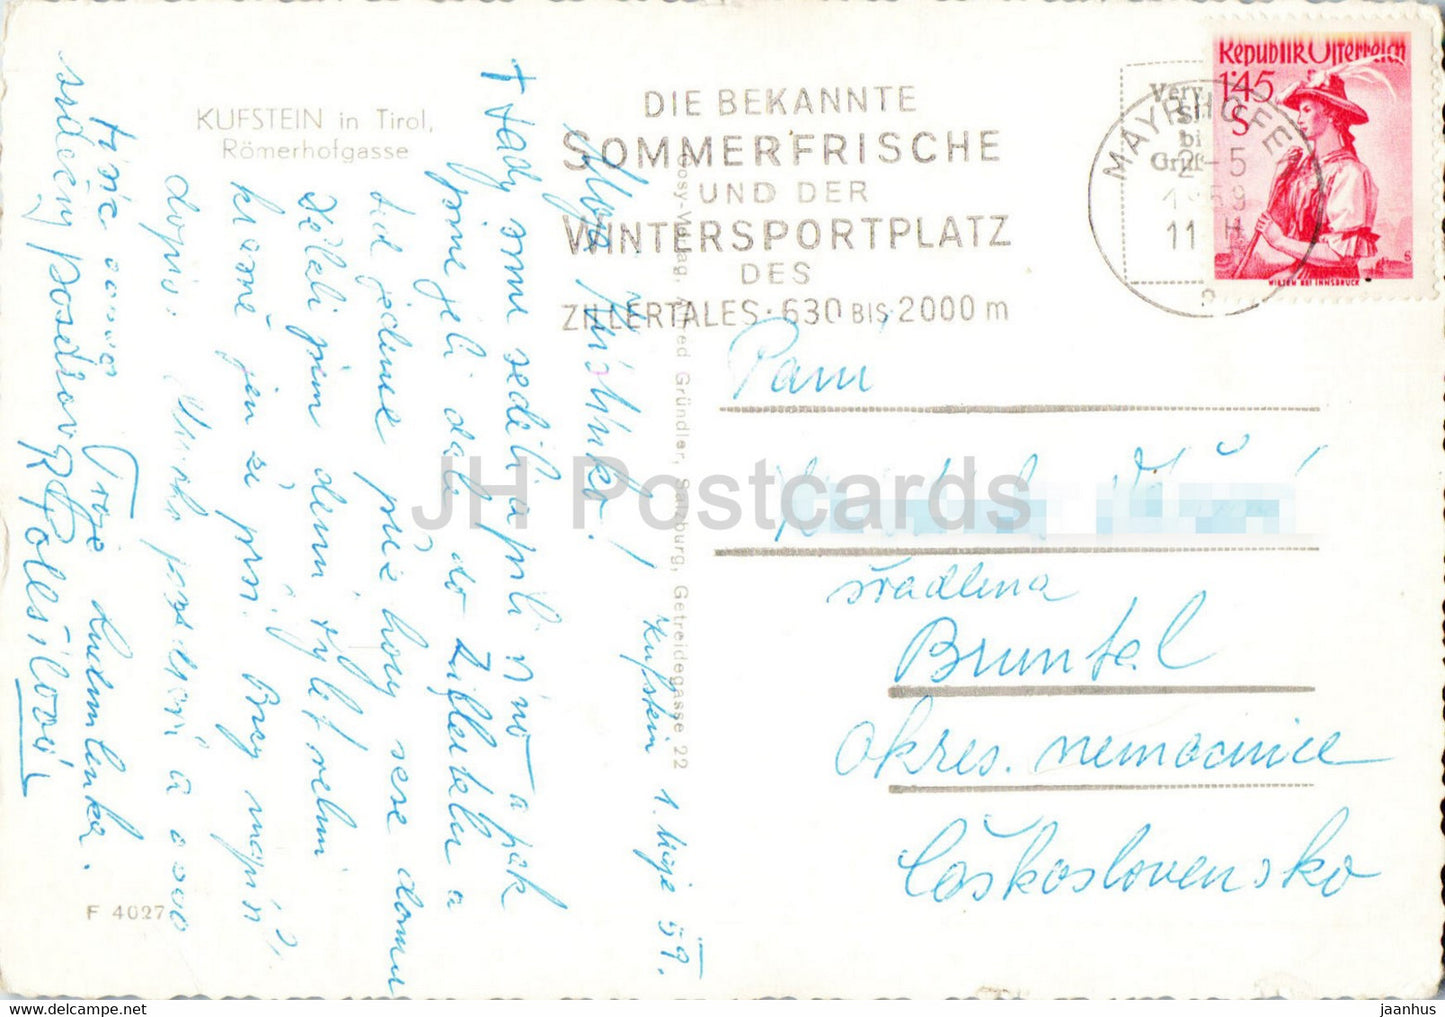 Kufstein in Tirol - Romerhofgasse - old postcard - 1959 - Austria - used